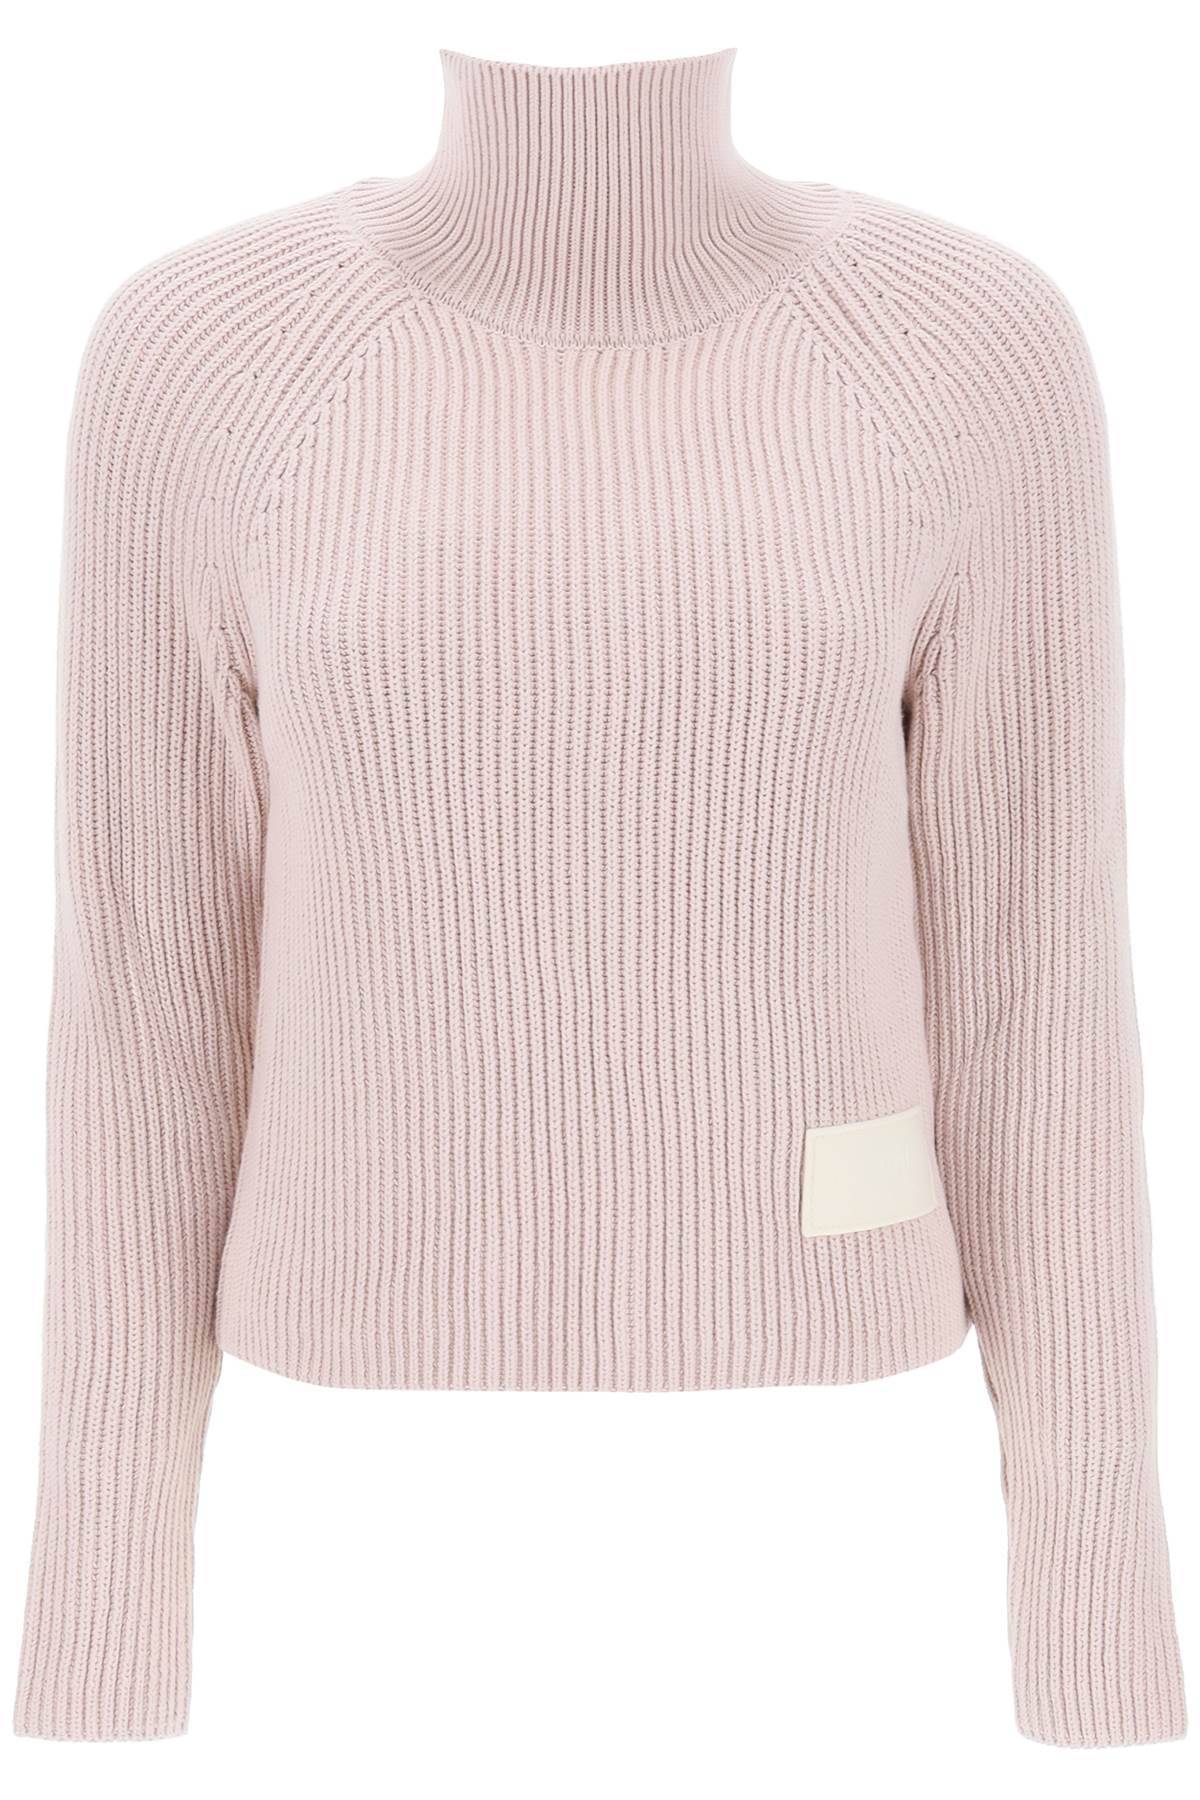 Ami Alexandre Mattiussi English Rib Funnel-neck Sweater In Pink